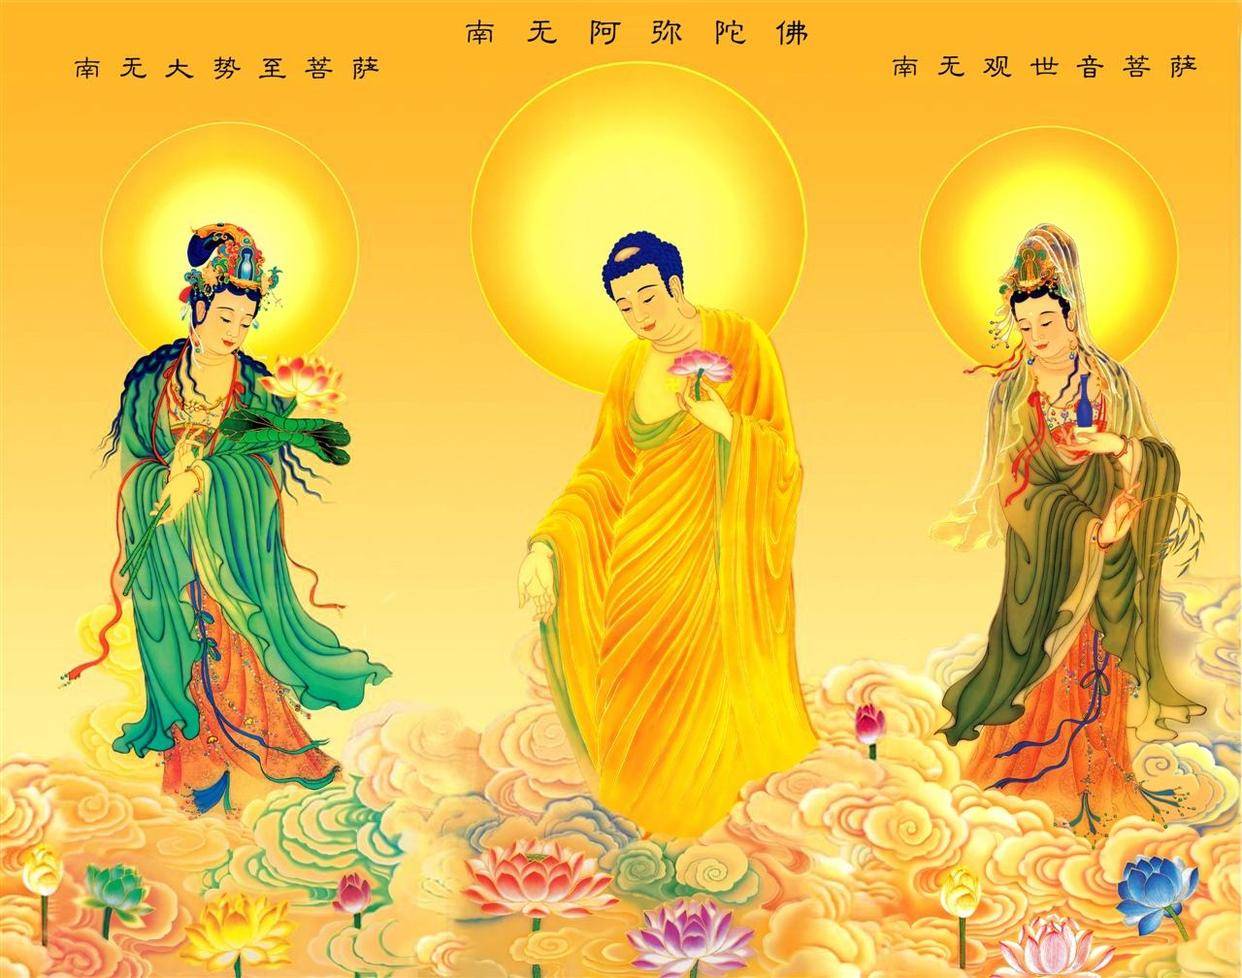 佛教中的四大菩萨,指的是谁?他们又分别掌管着什么?你了解吗